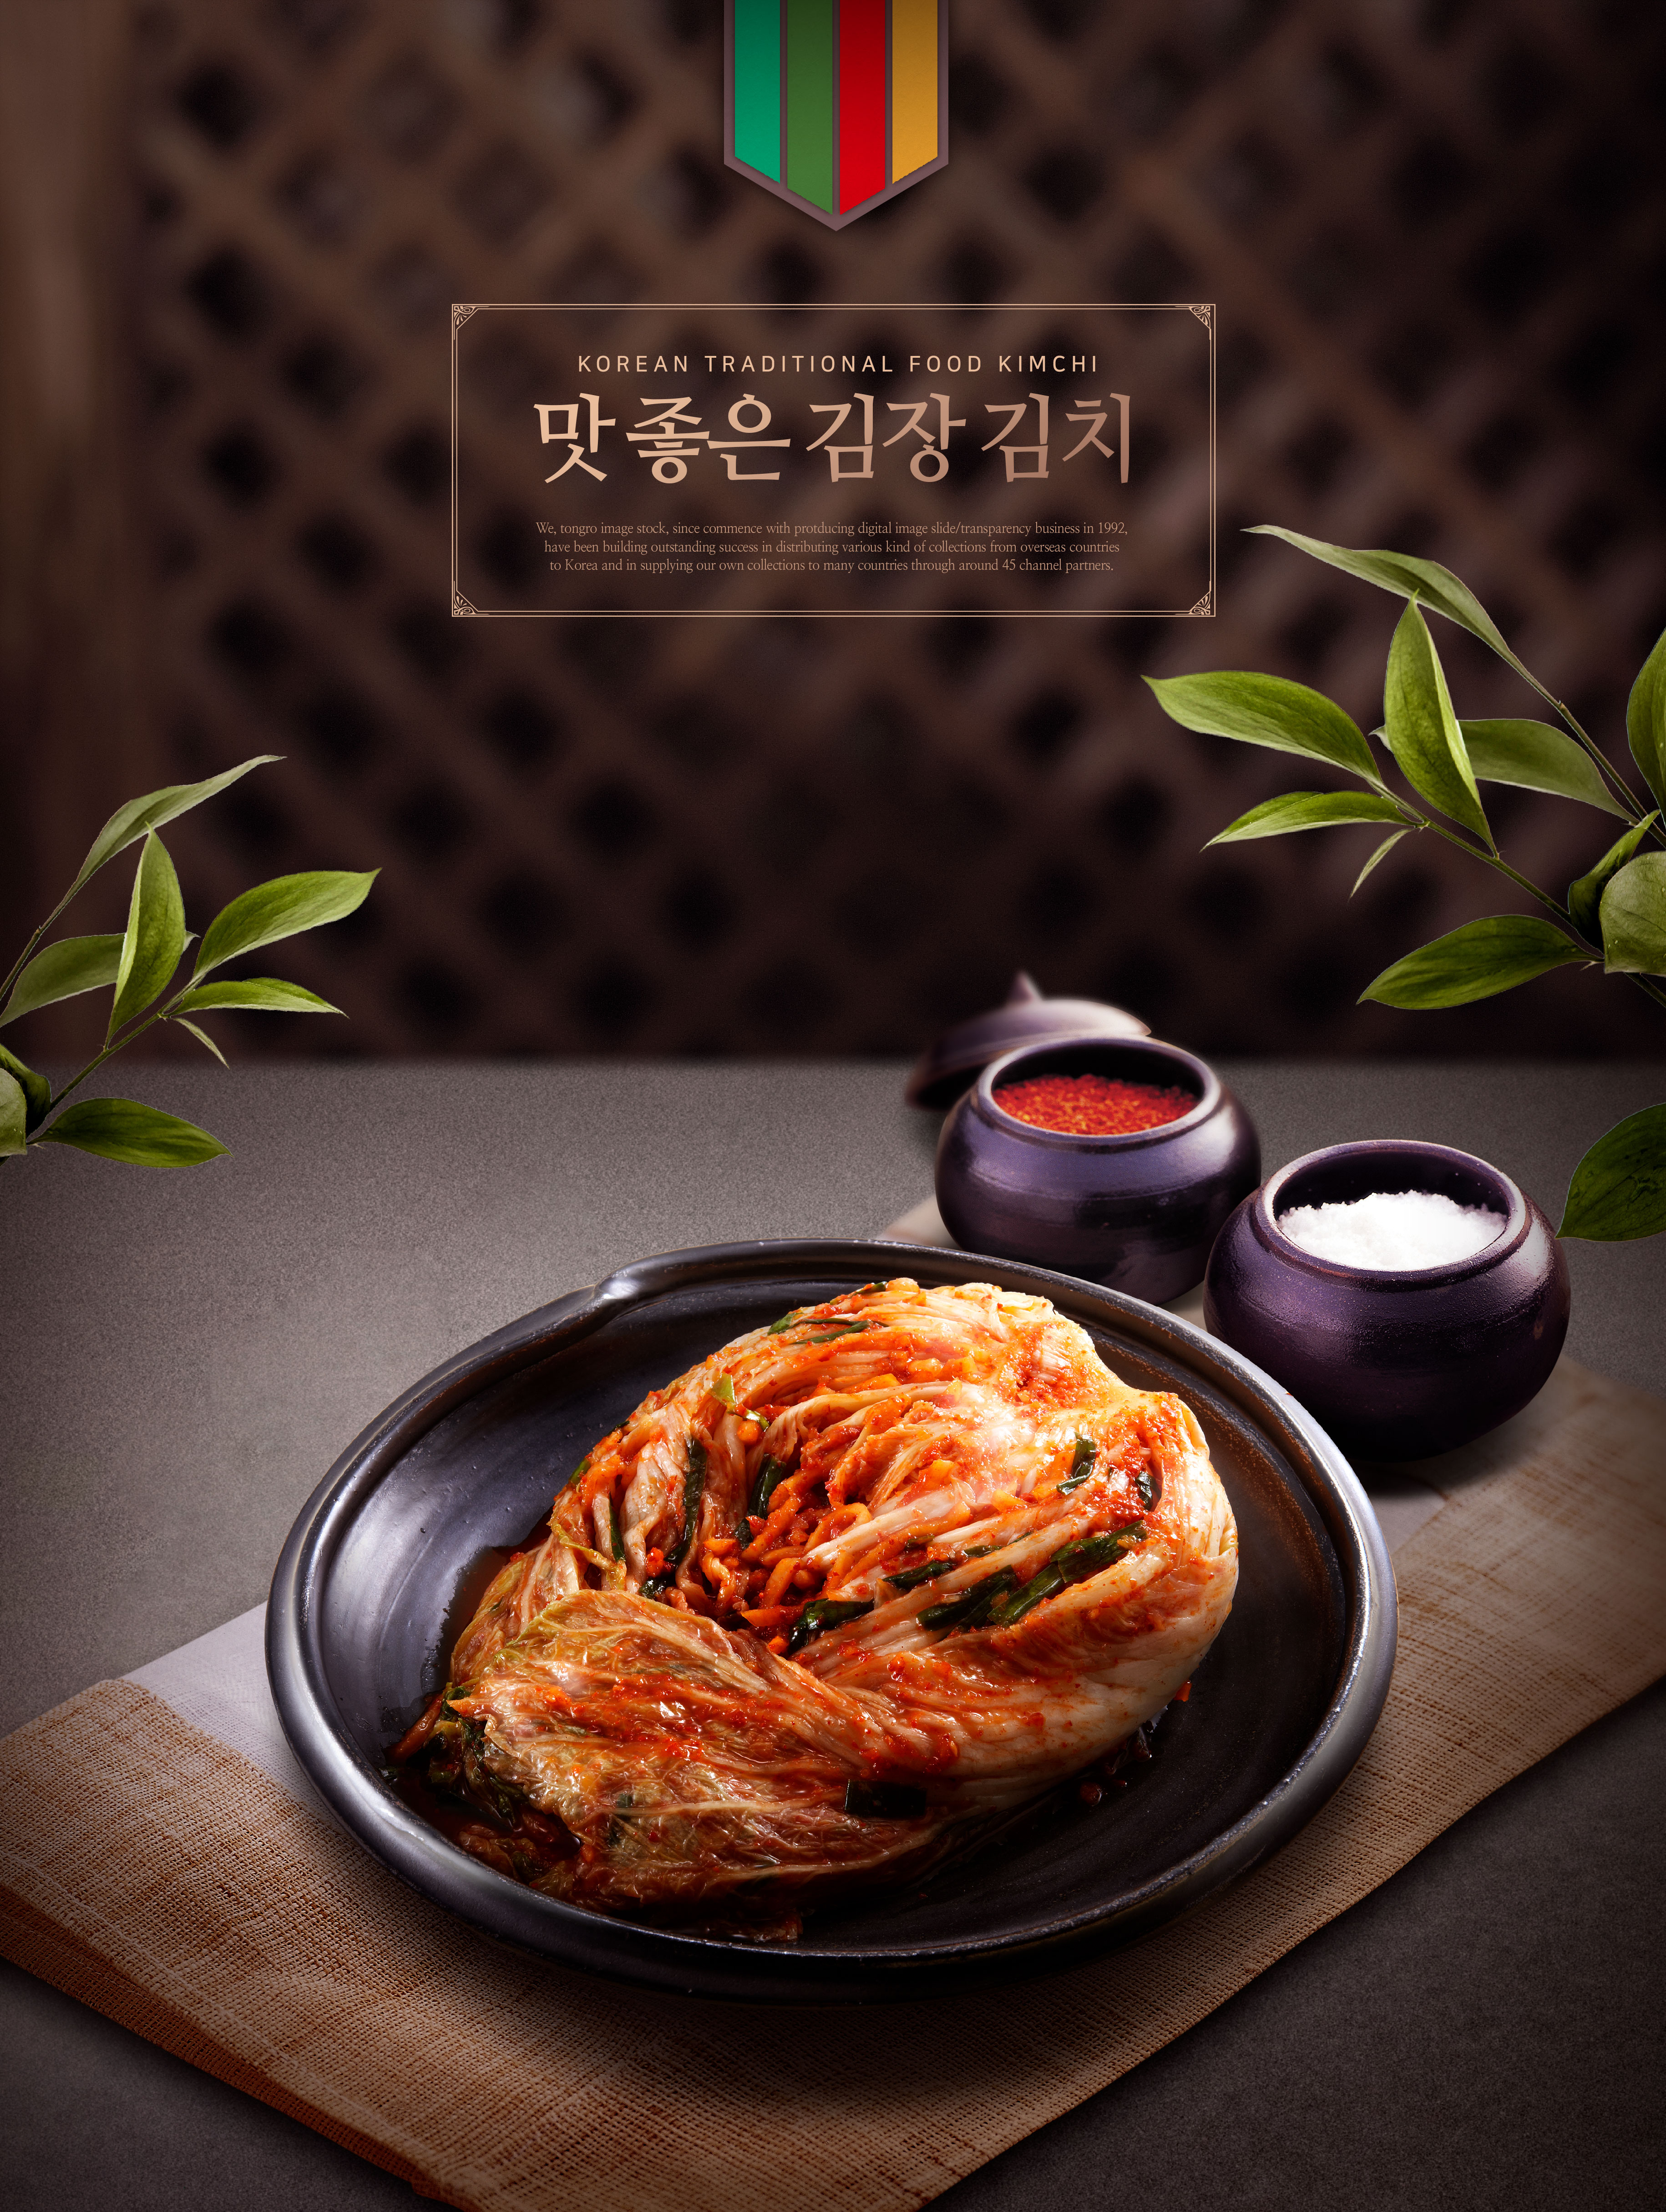 韩国传统特色食品泡菜广告海报psd模板插图